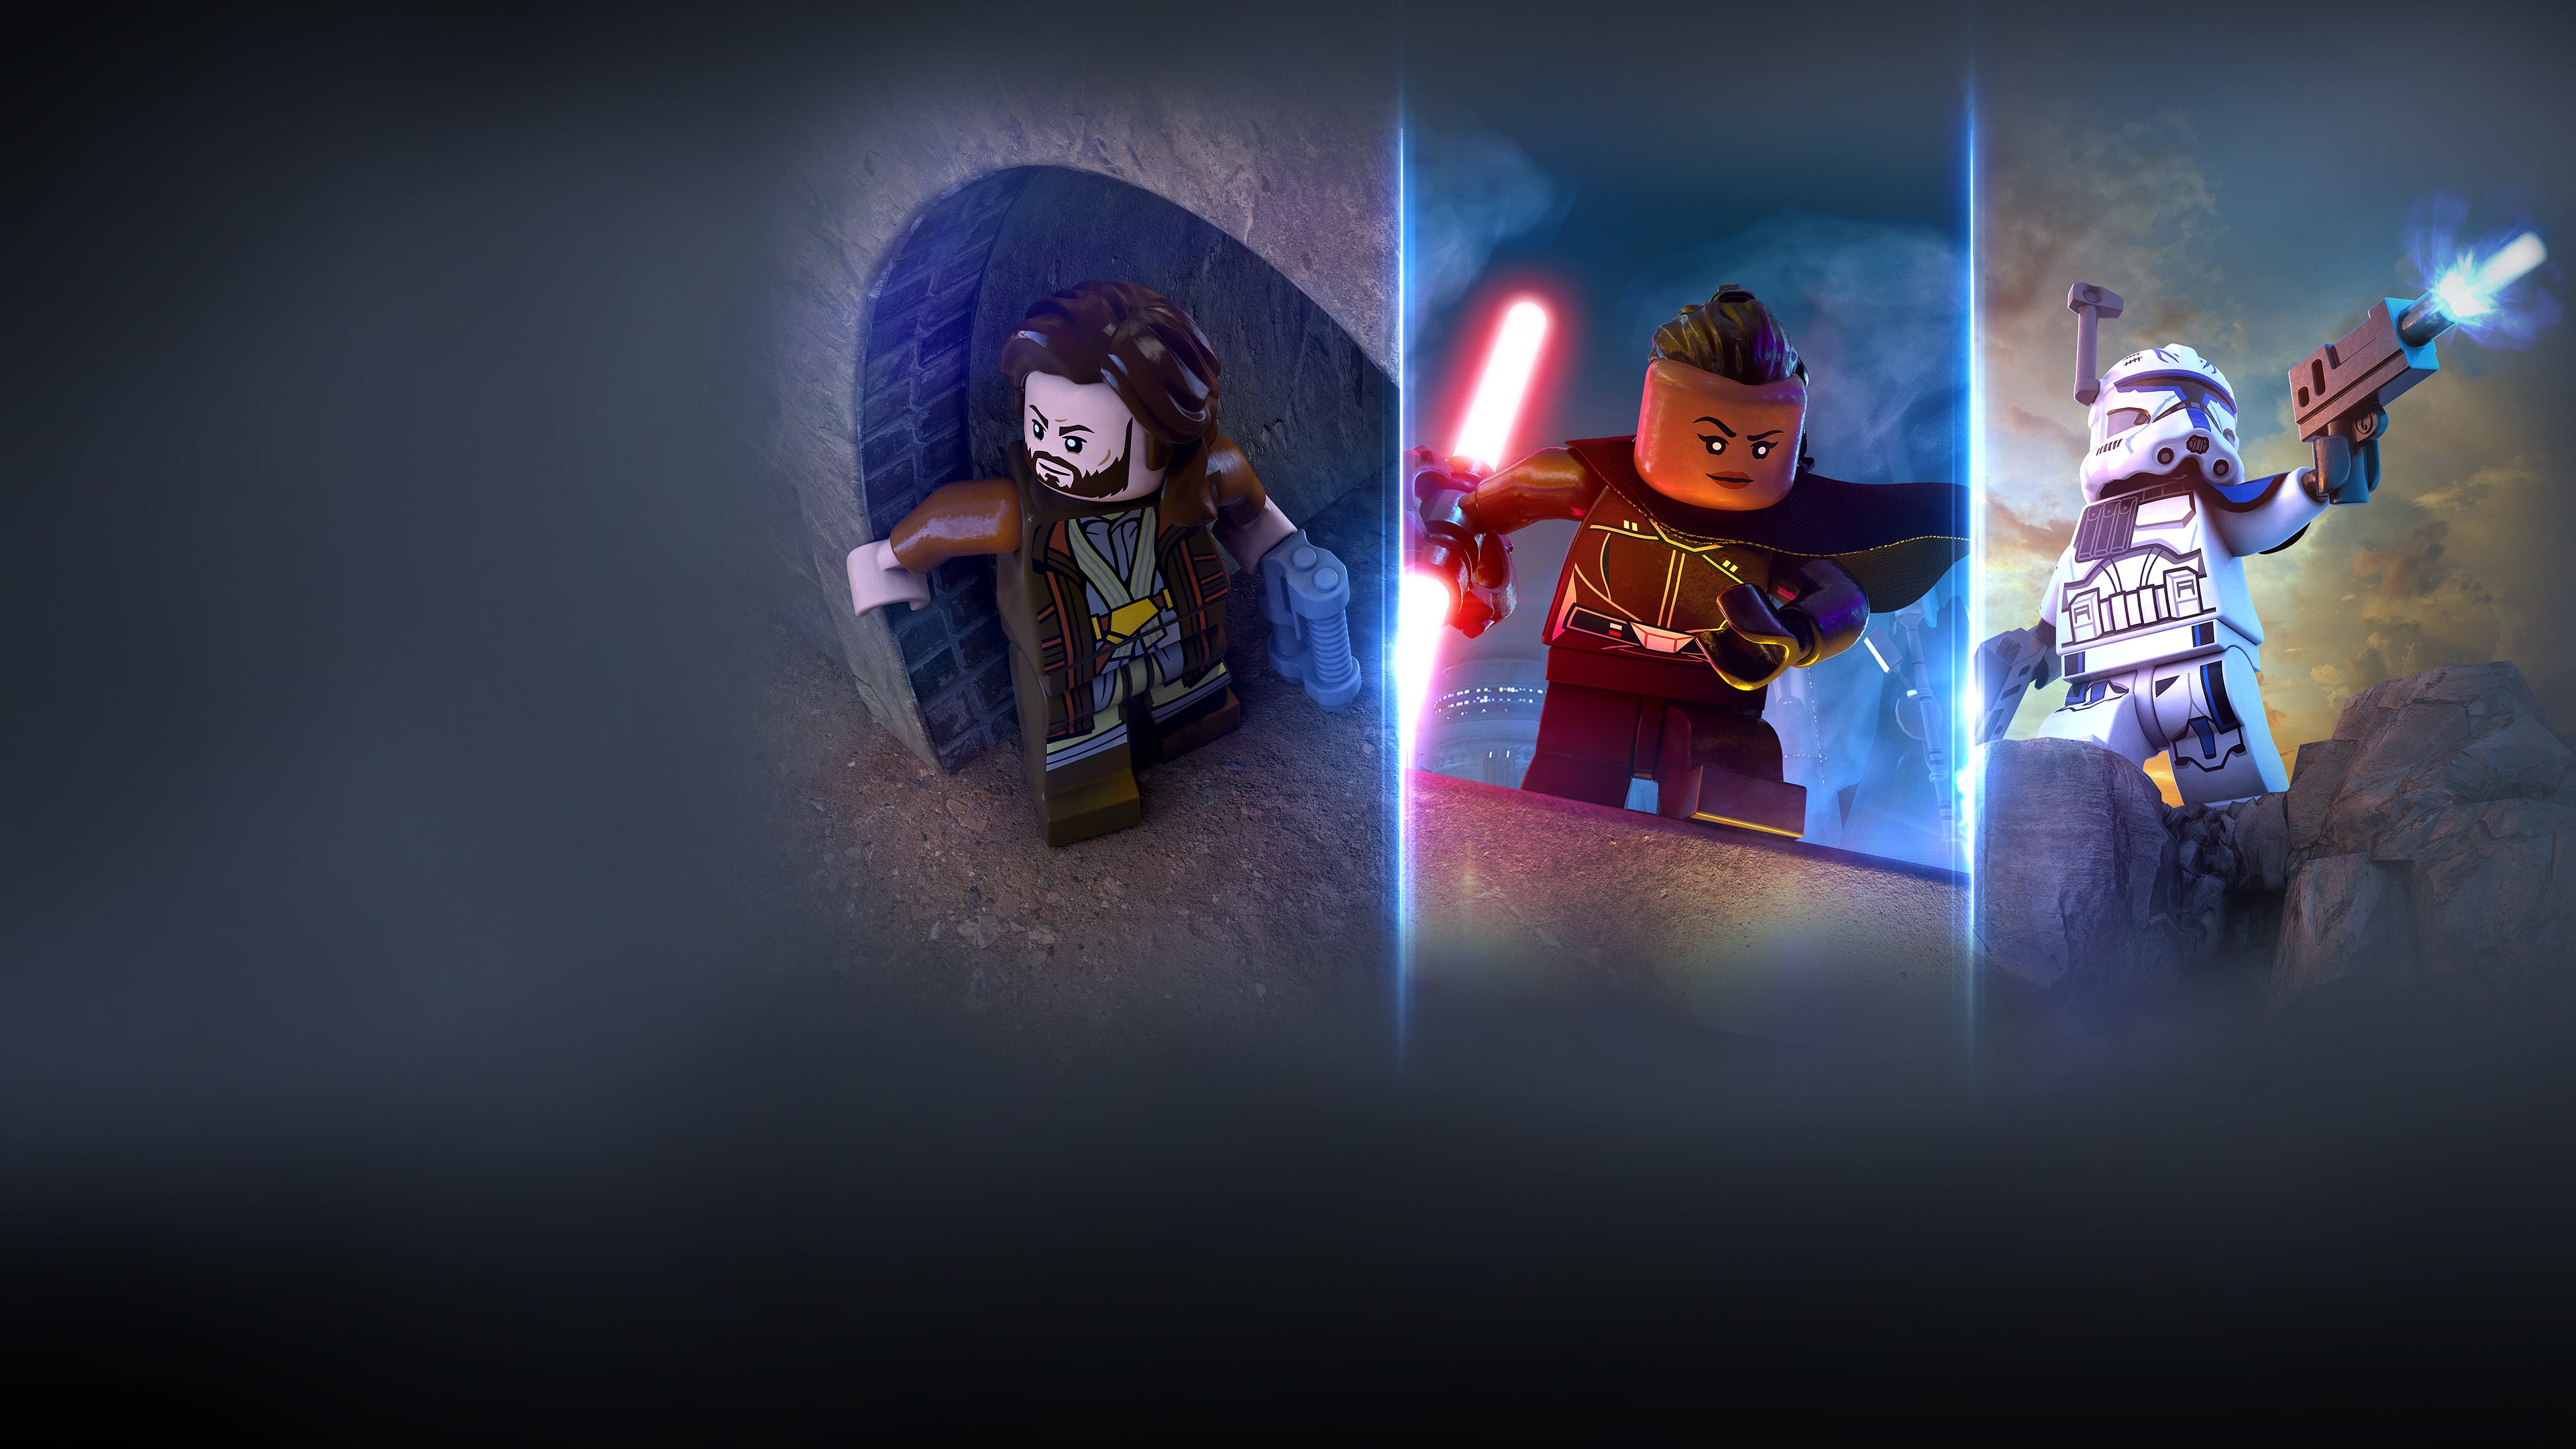 مجموعة الشخصيات الثانية في ‏LEGO® Star Wars™: سلسلة سكاي ووكر